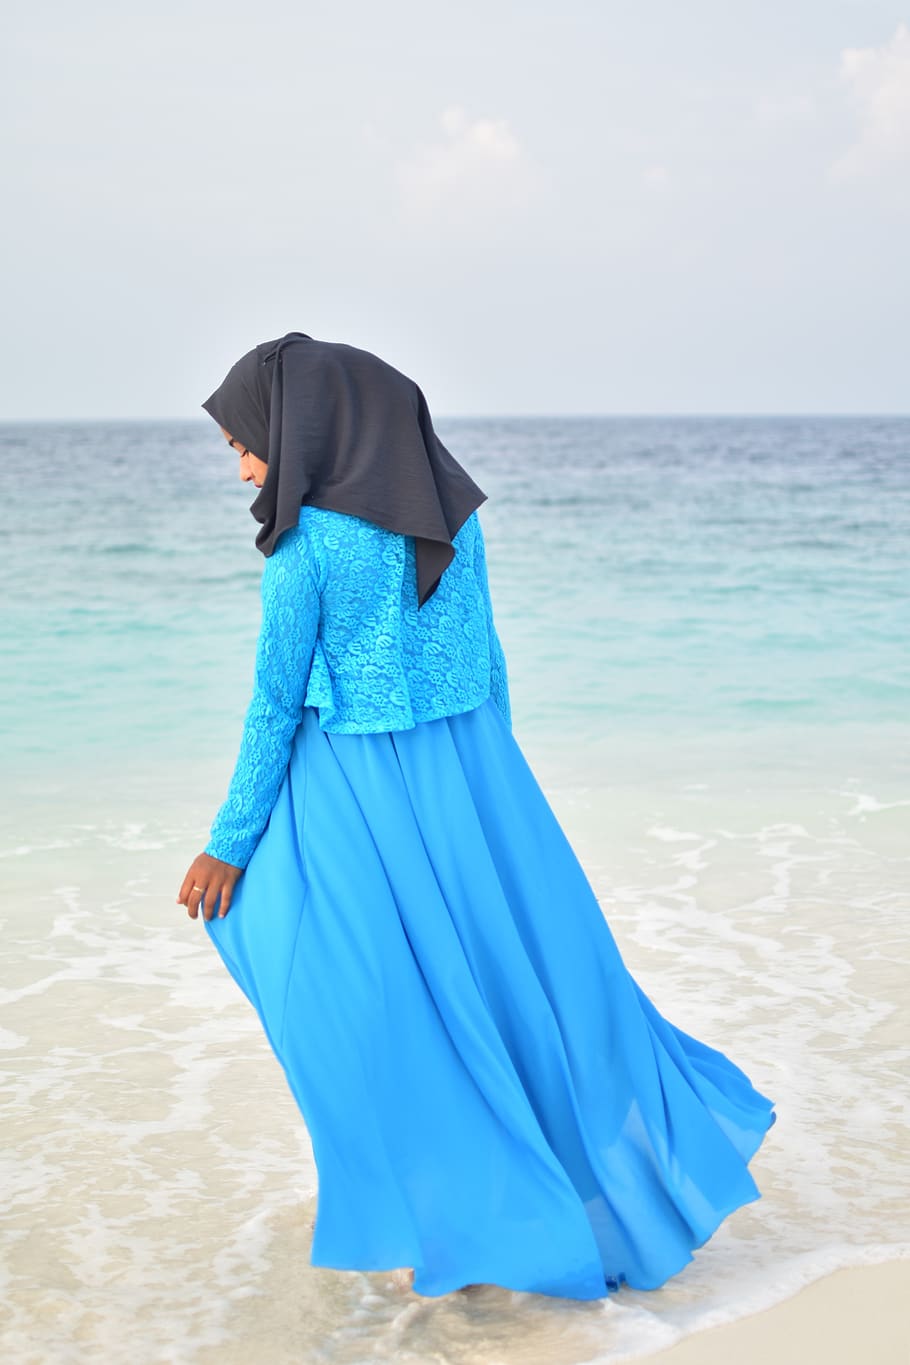 muslim, islam, blue, long dress, sea portrait, model, religion, HD wallpaper